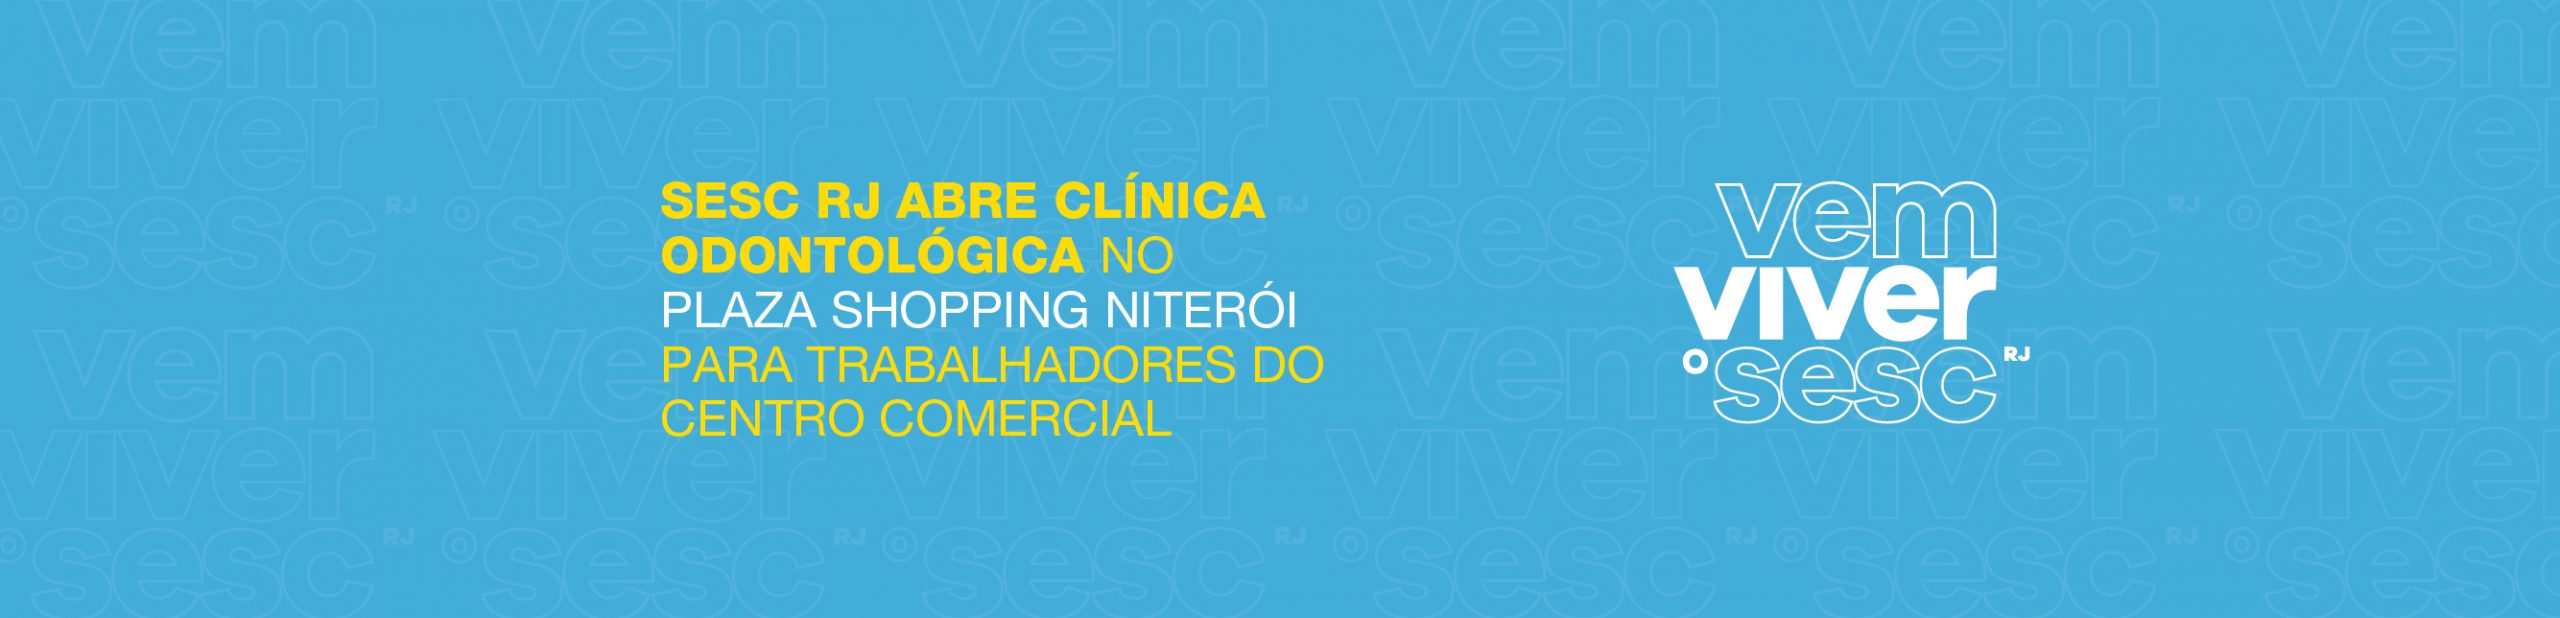 Sesc RJ abre clínica odontológica no Plaza Shopping Niterói